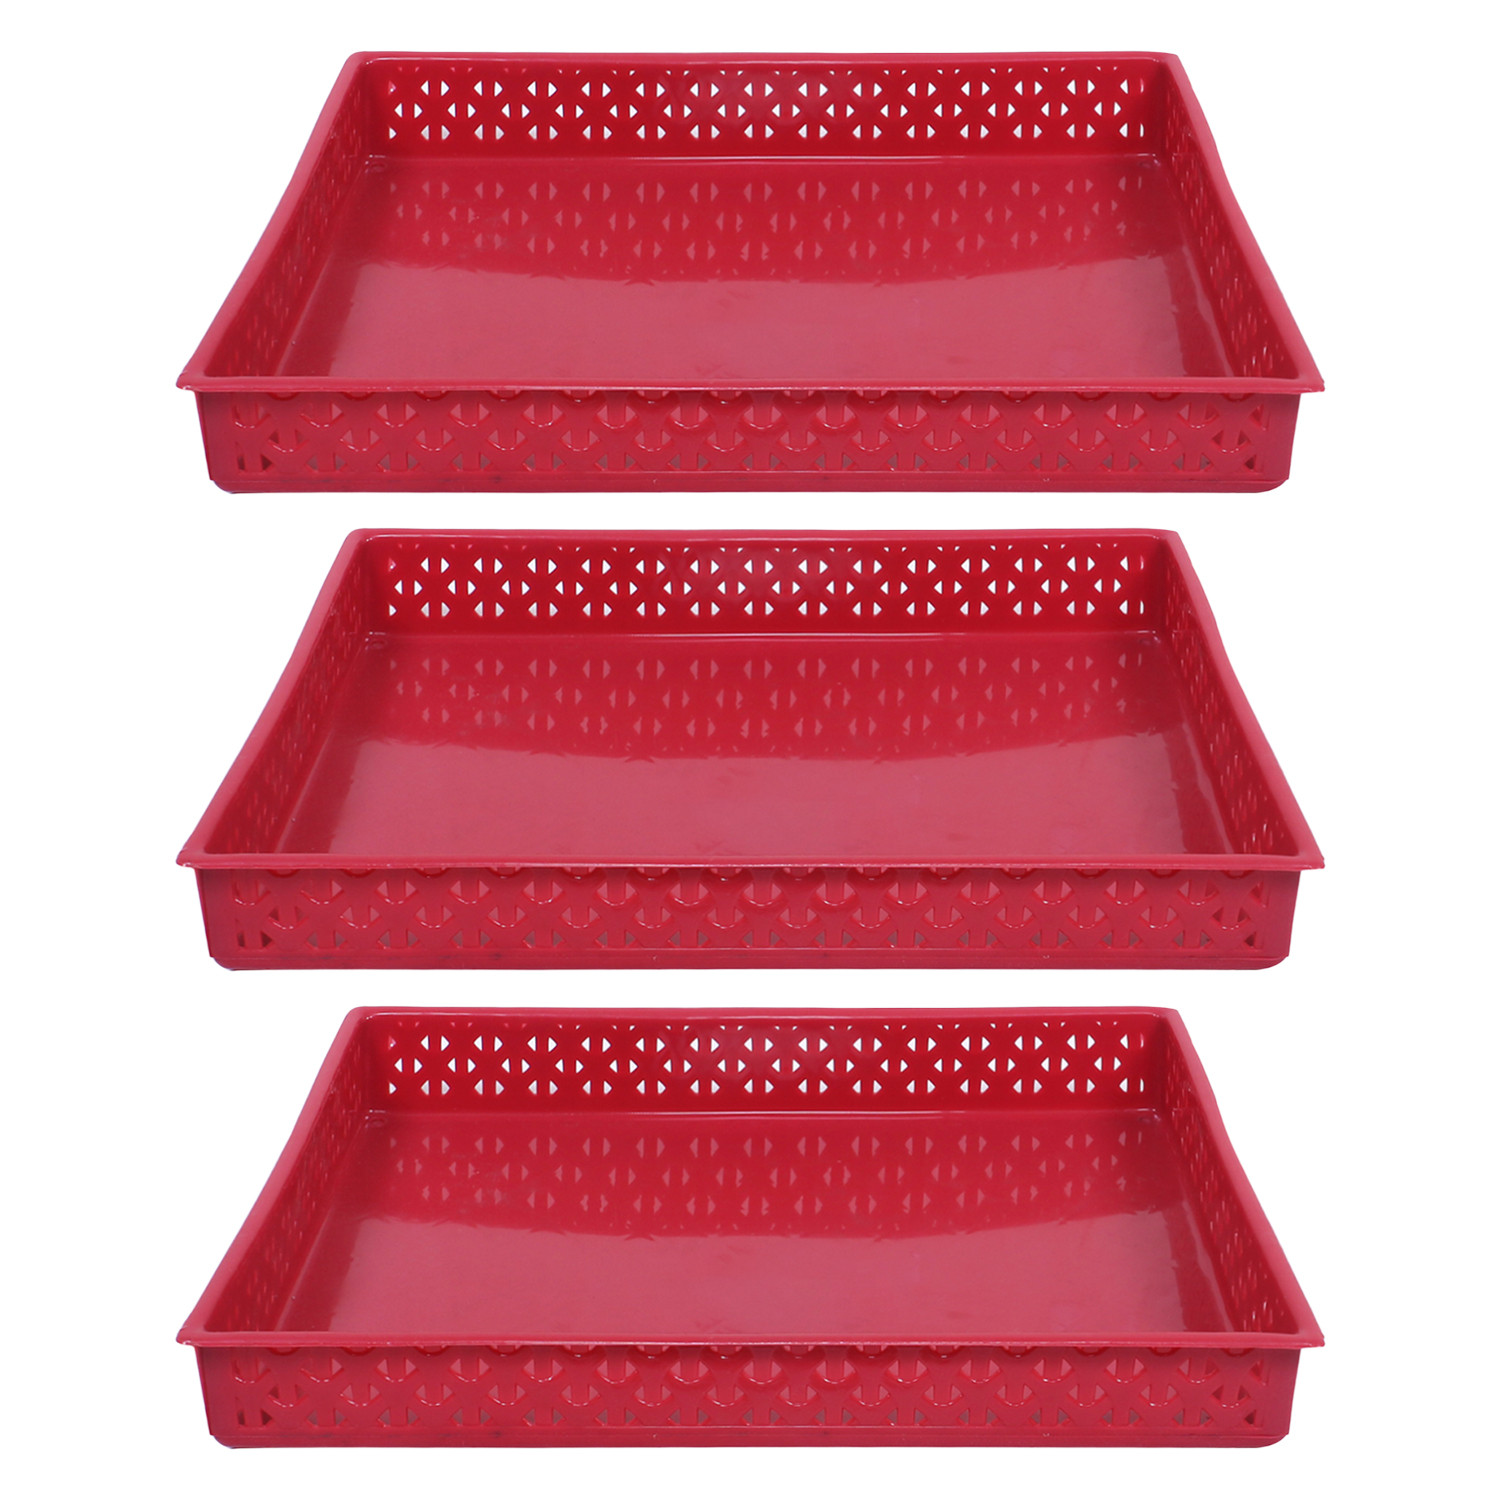 Kuber Industries Storage Tray|Versatile Plastic Storage Organizer|Rectangular Tray for Kitchen Storage|Storage Tray for office|ALEXA-15 (Maroon)